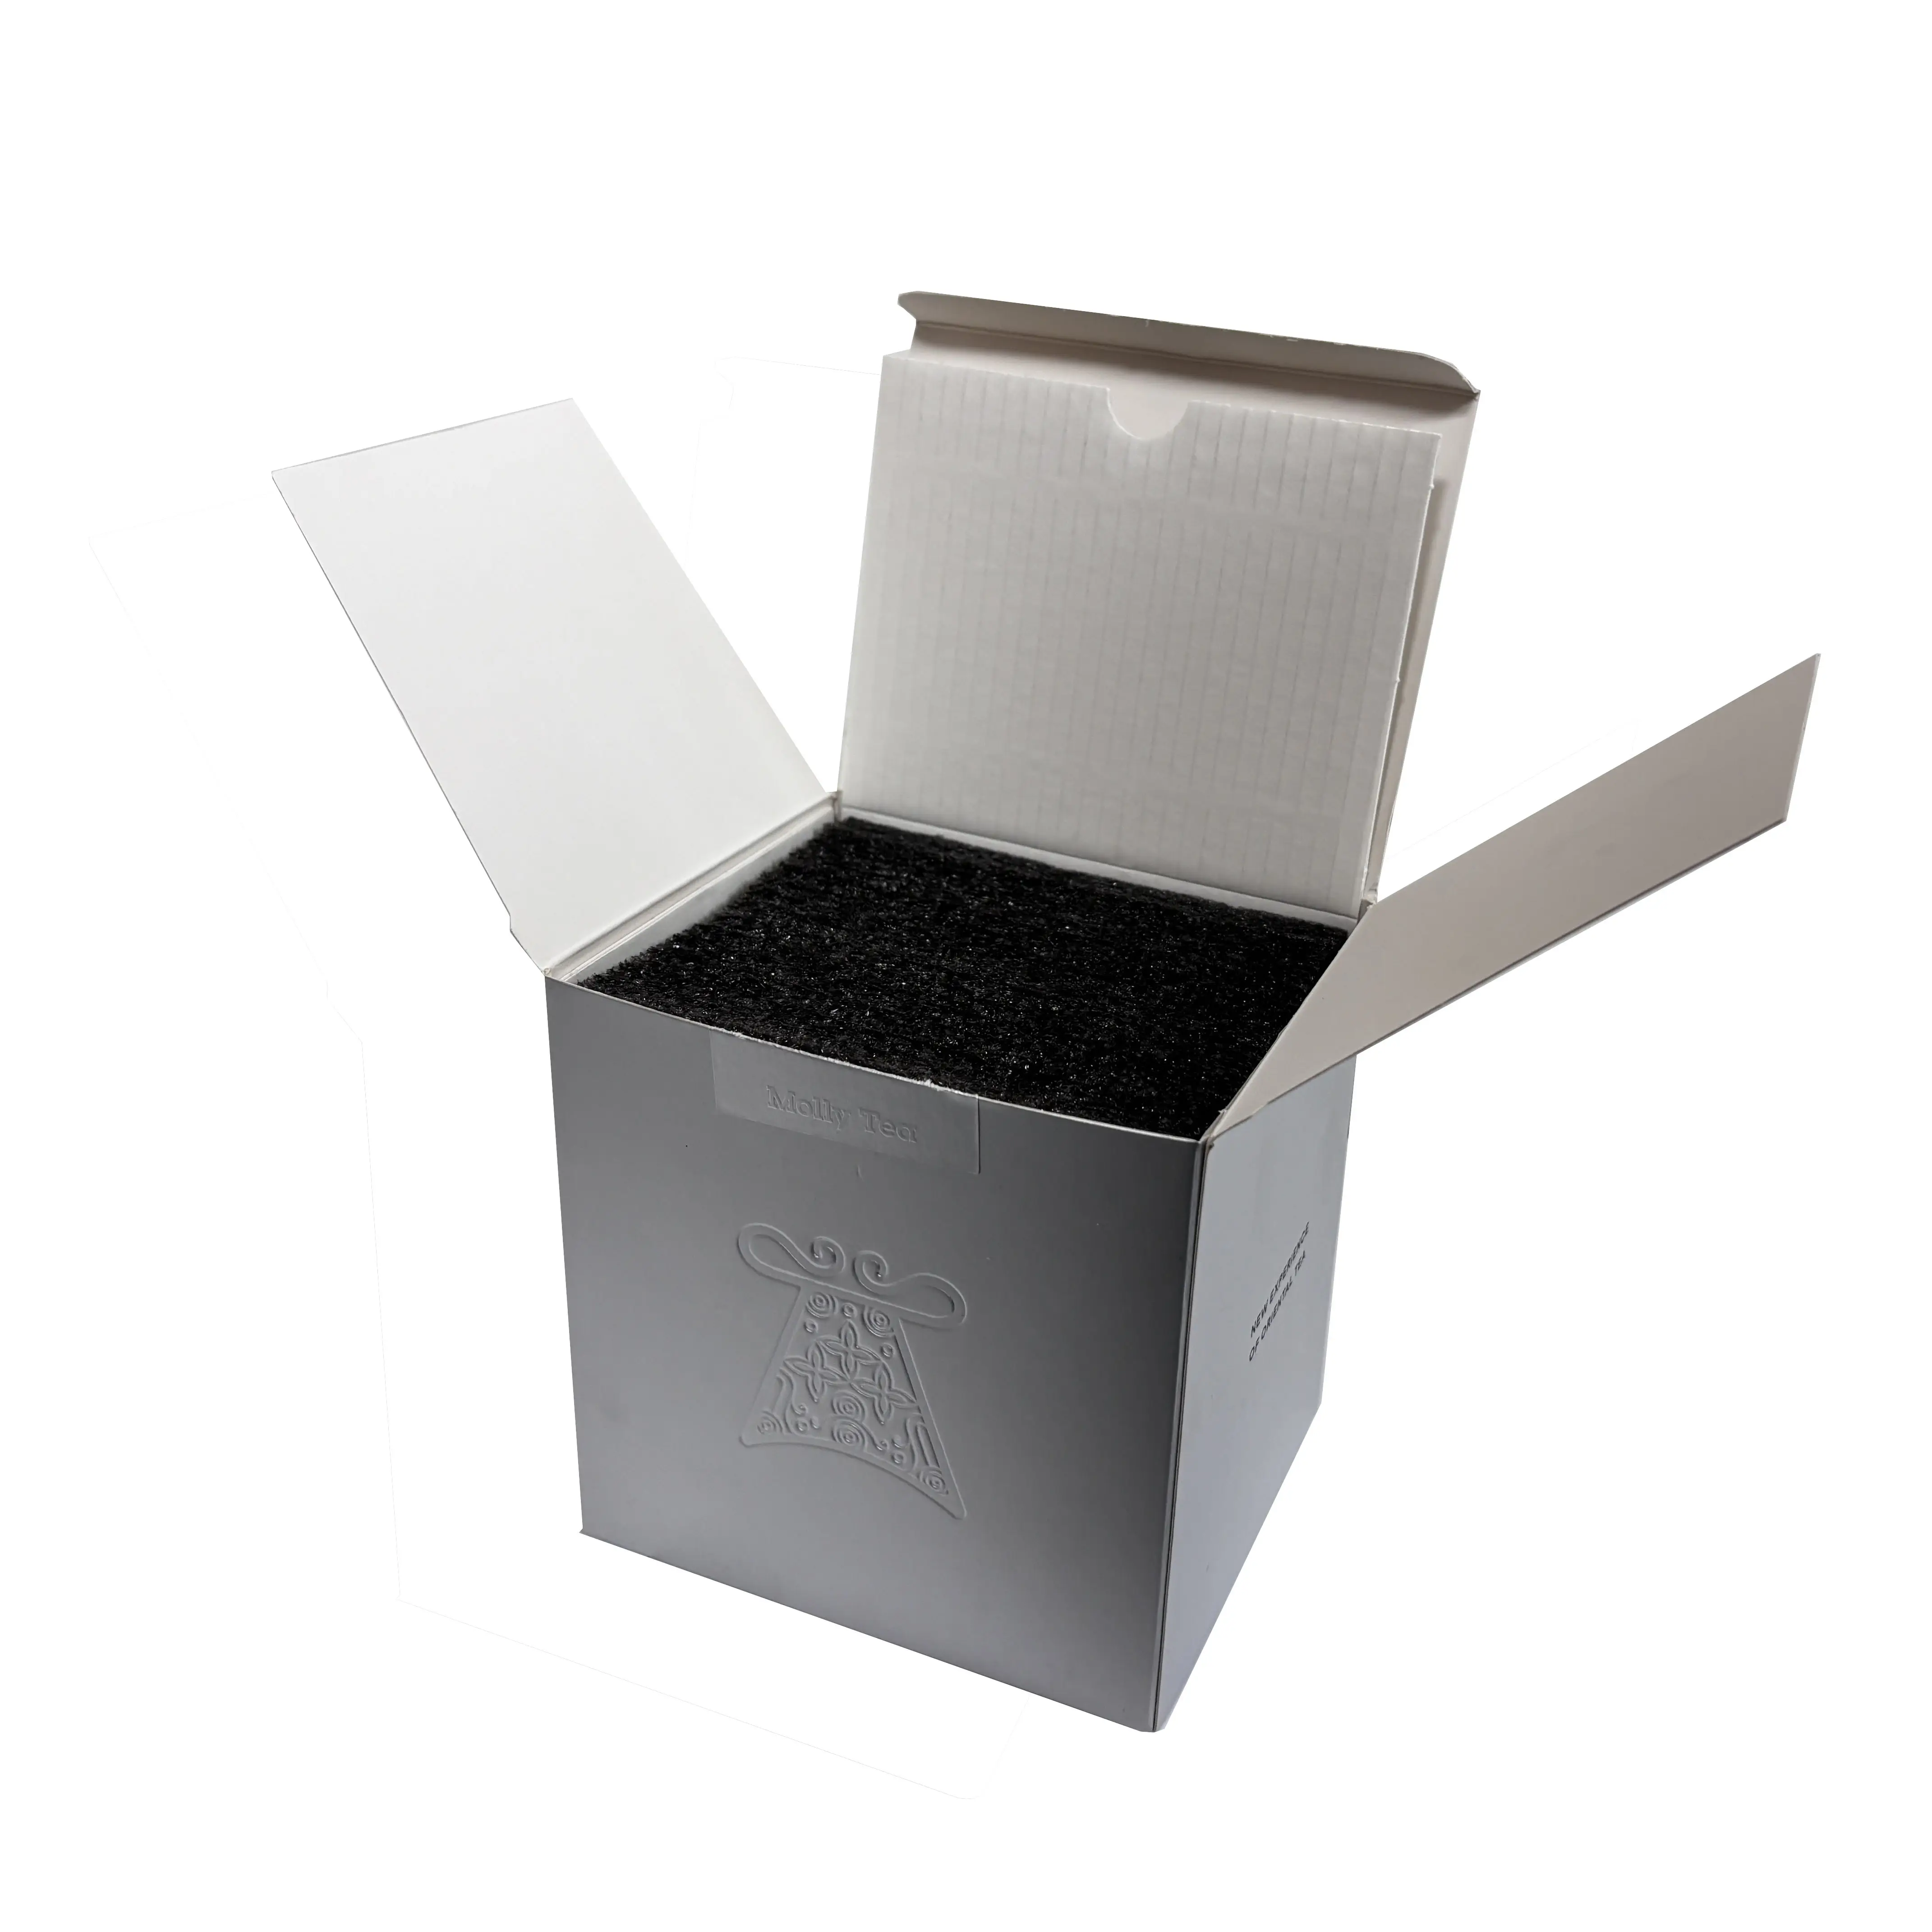 Caixa de papel Kraft ecológica de tamanho personalizado fornecida de fábrica, caixa de papelão prateada com isopor